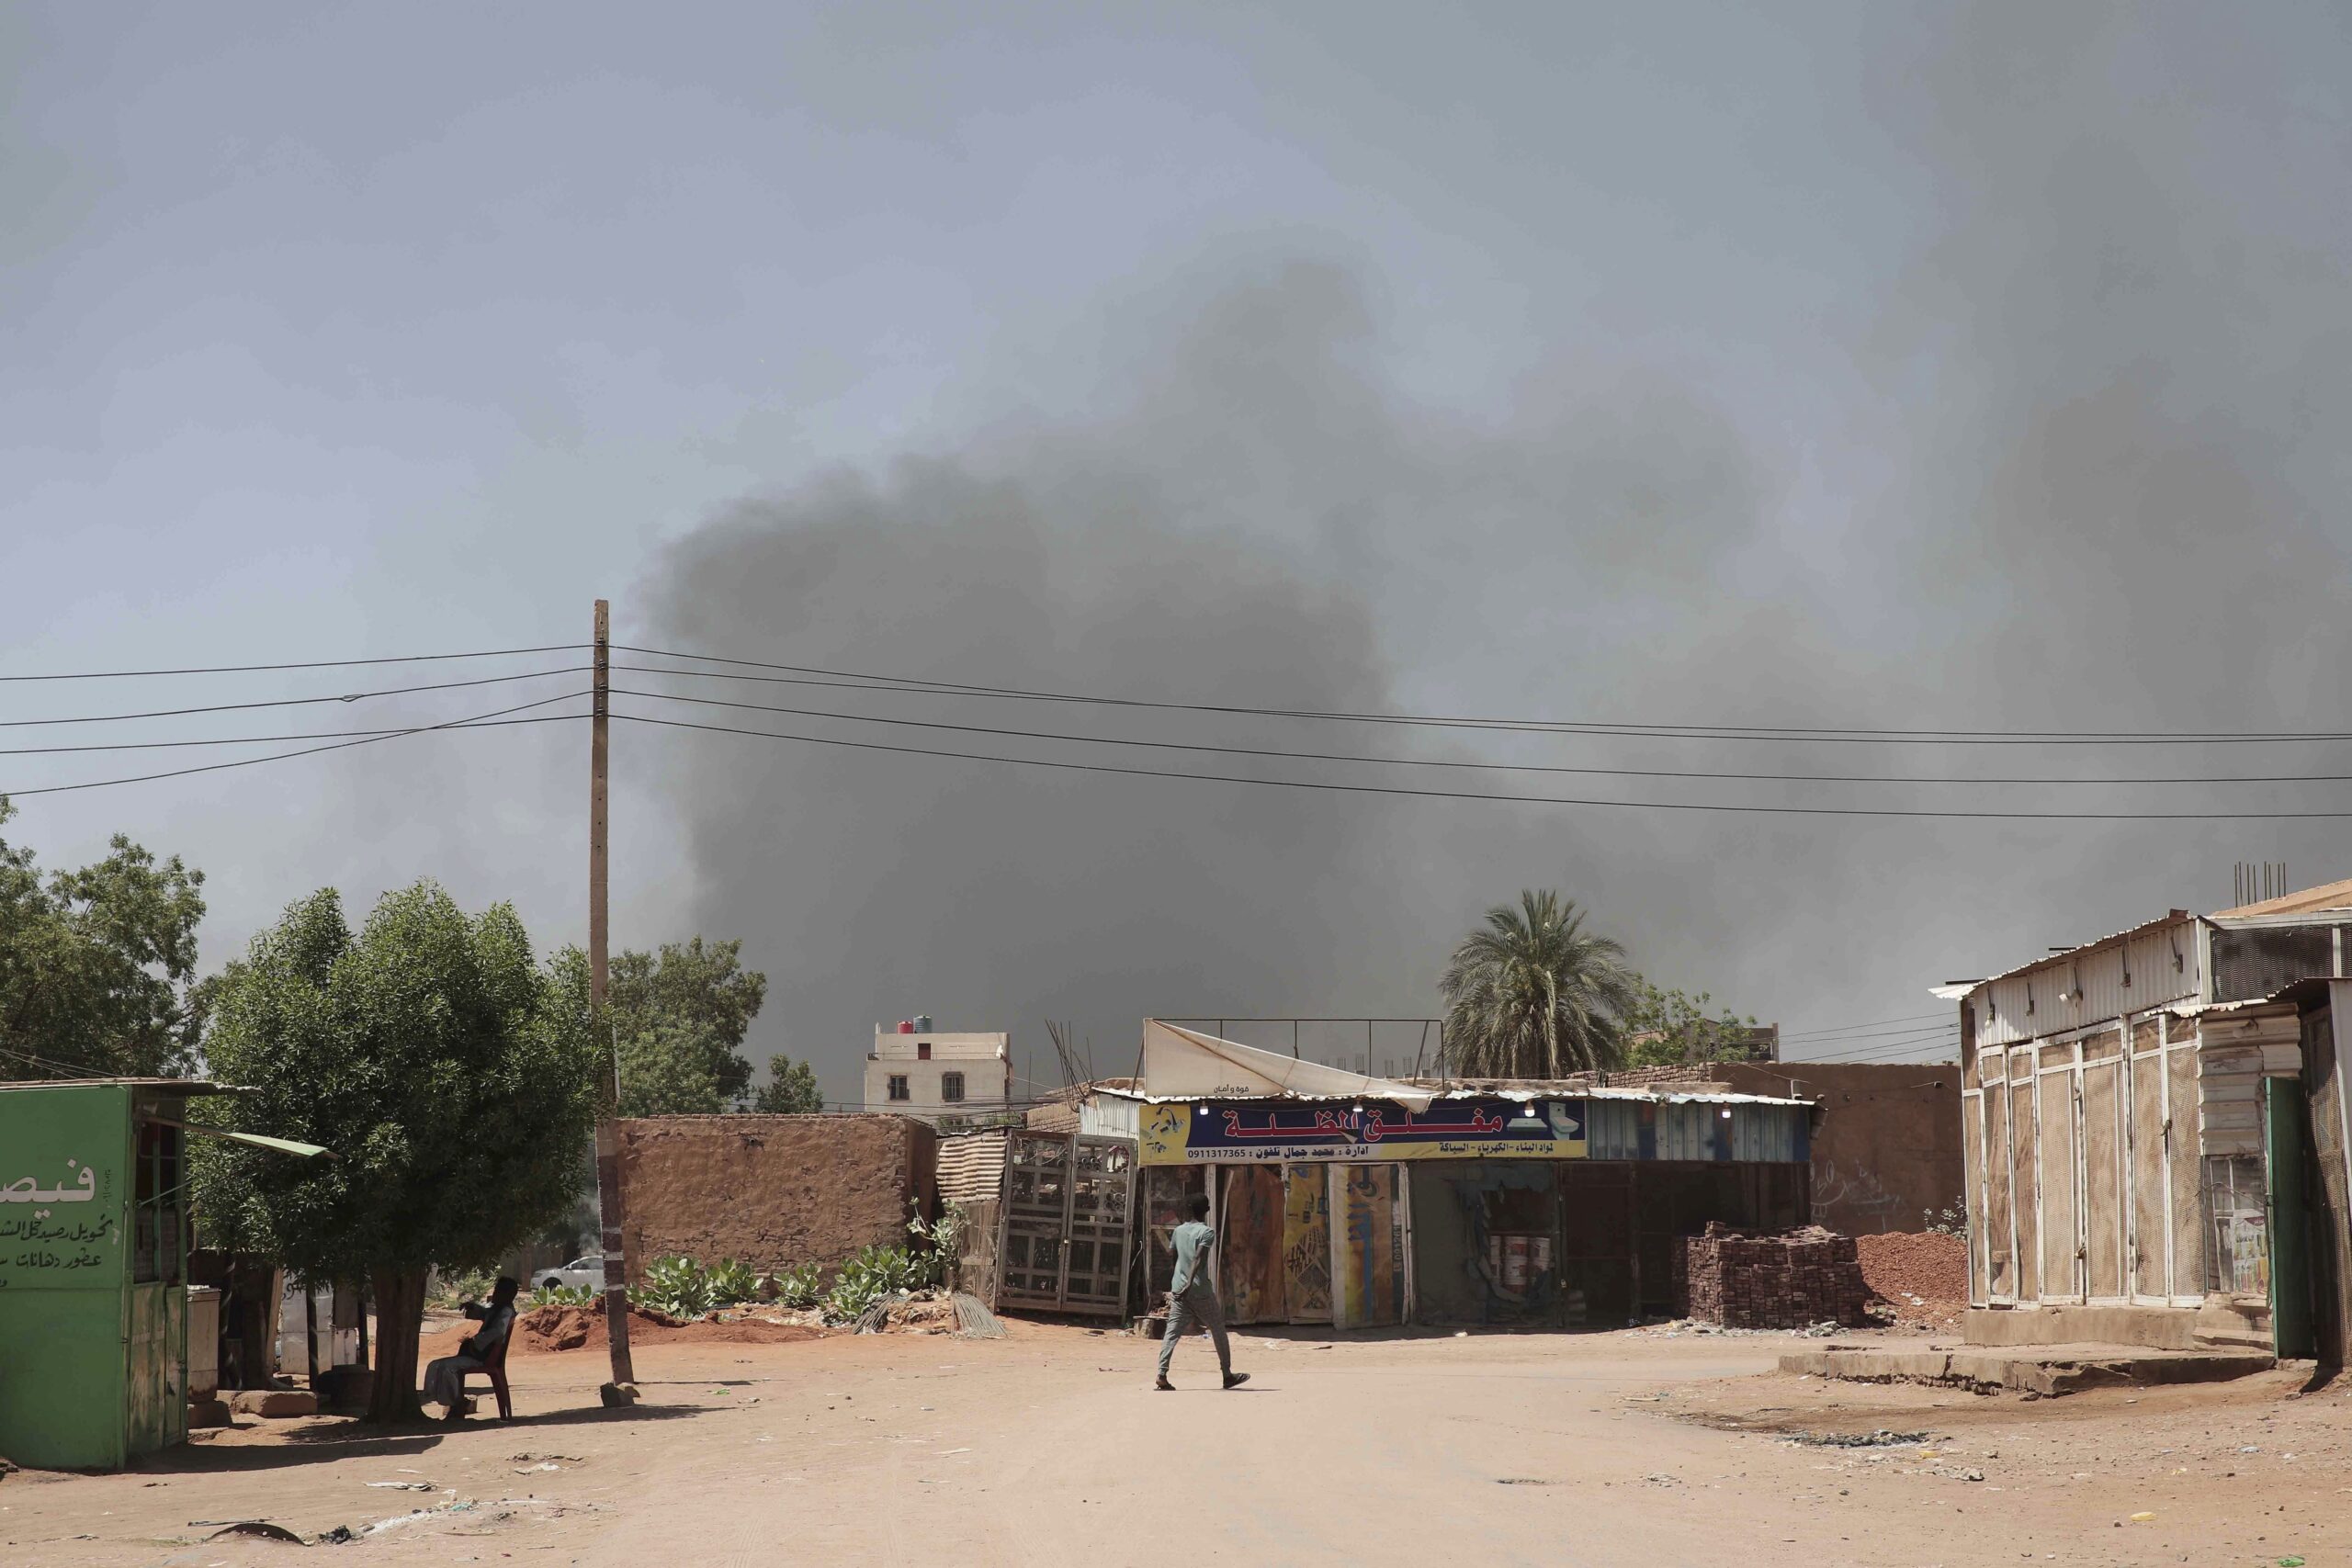 Σουδάν: Χριστιανοί τραυματίστηκαν από πυρά εναντίον εκκλησίας – Τα δύο στρατόπεδα επιρρίπτουν το ένα στο άλλο την ευθύνη για την επίθεση